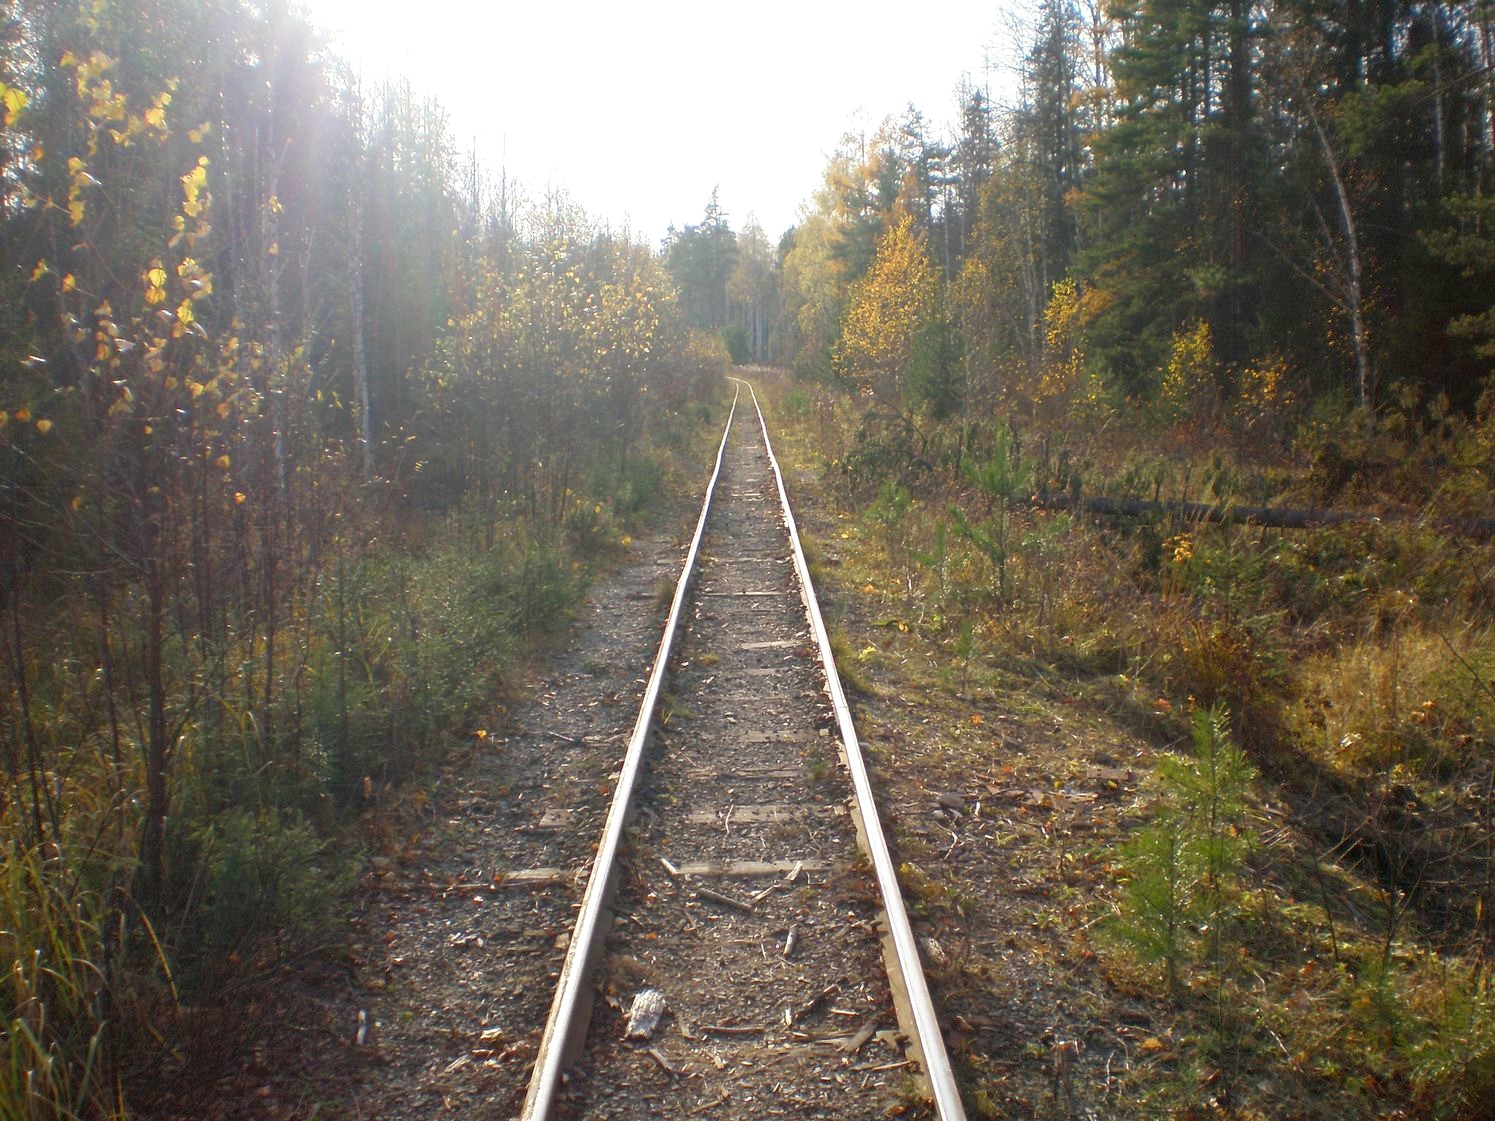 Висимо-Уткинская узкоколейная железная дорога  — фотографии, сделанные в 2007 году (часть 7)